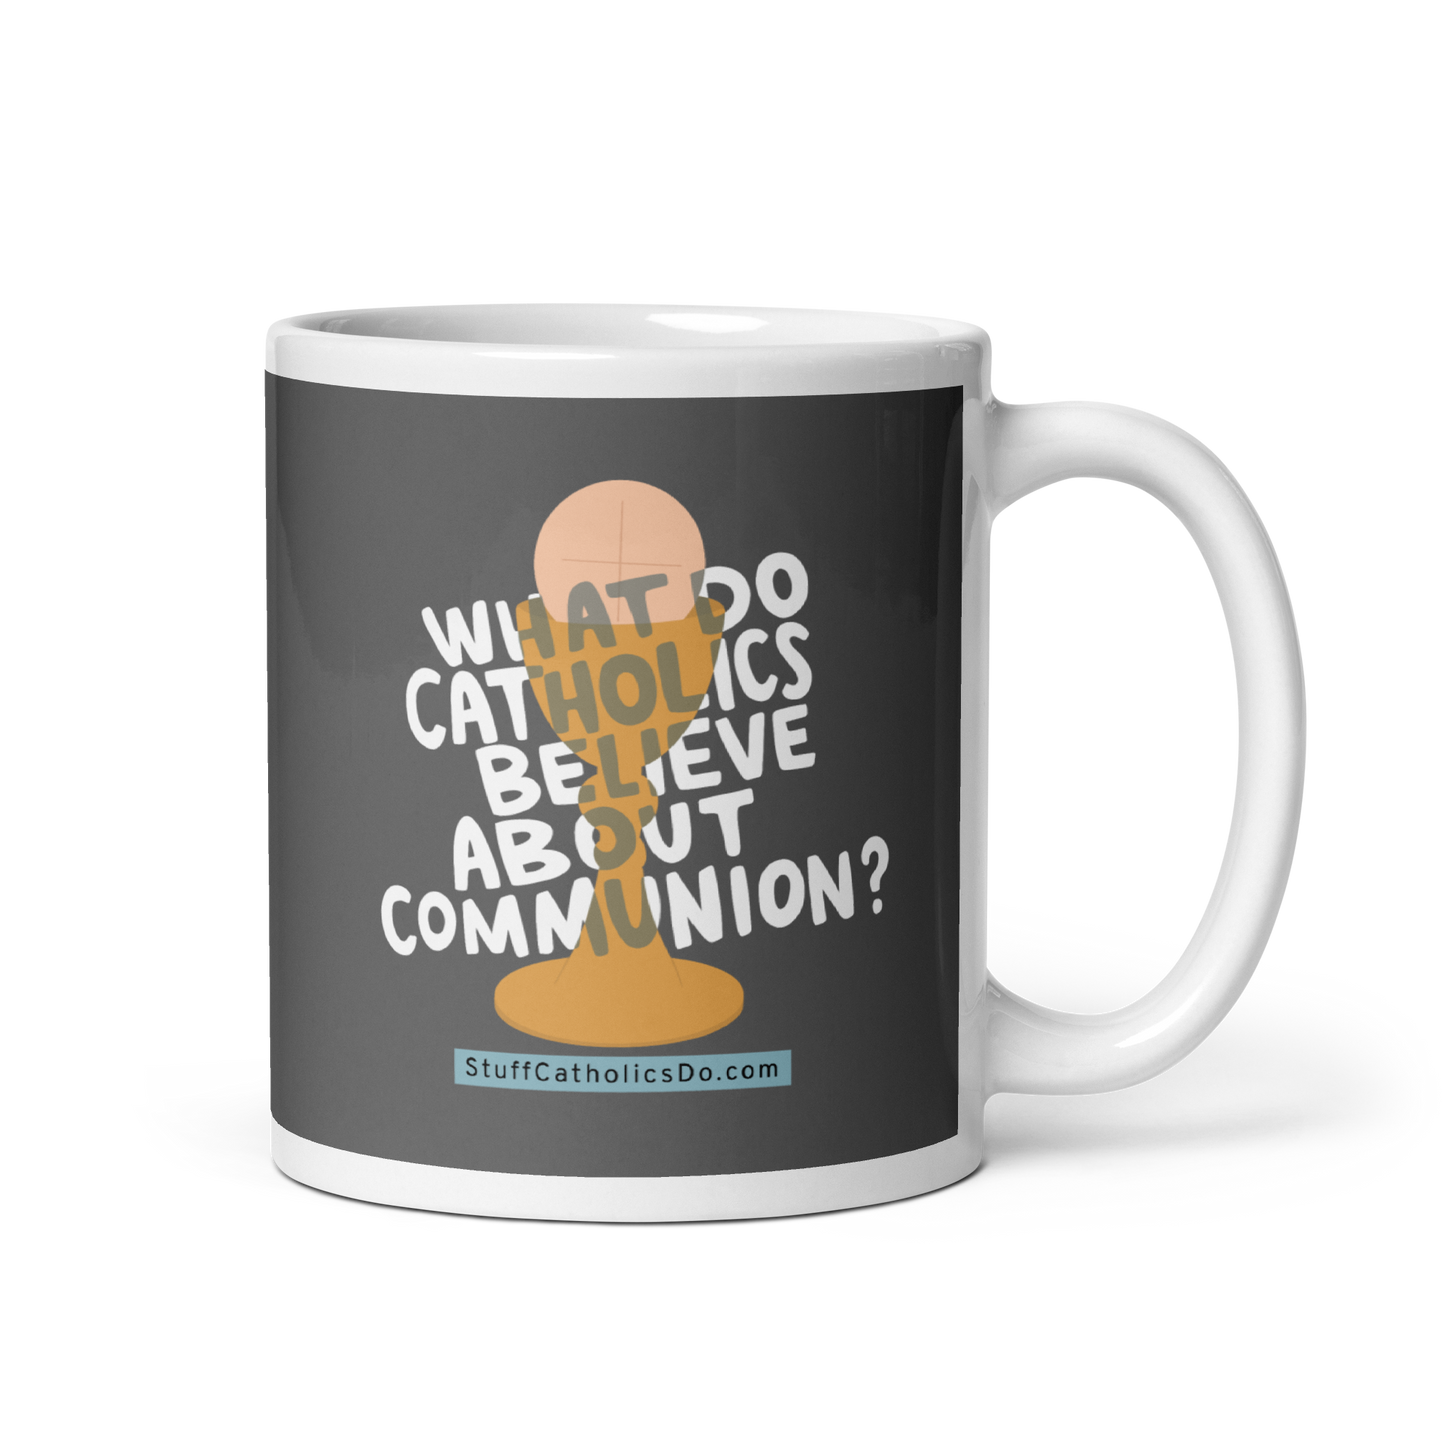 "What Do Catholics Believe About Communion?" Mug